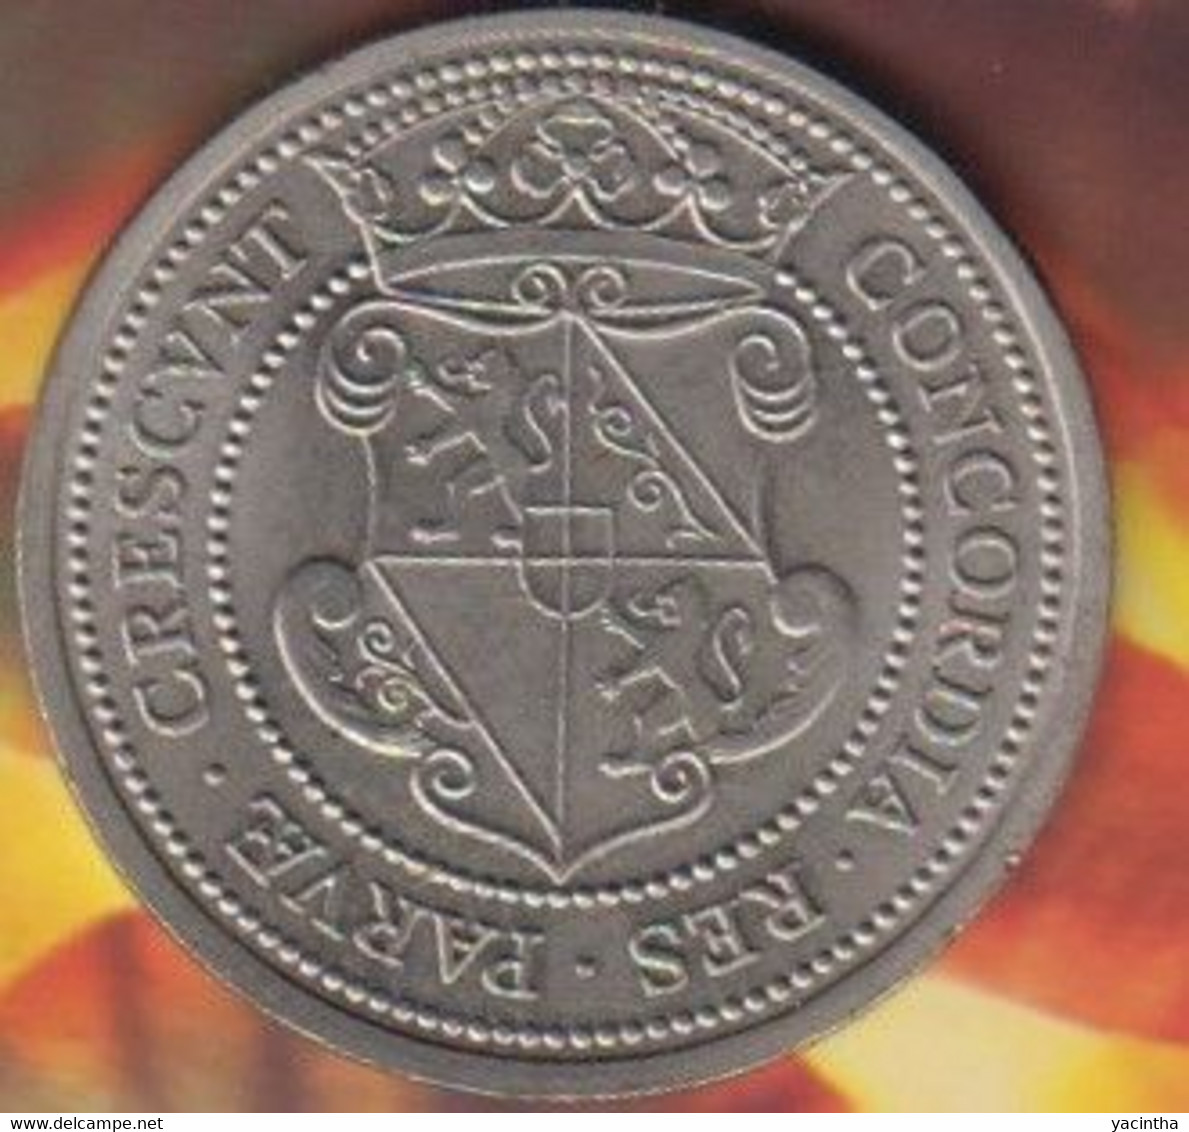 1 Unie Daalder  . Unie Van Utrecht  1979      (1008) - Monedas Elongadas (elongated Coins)